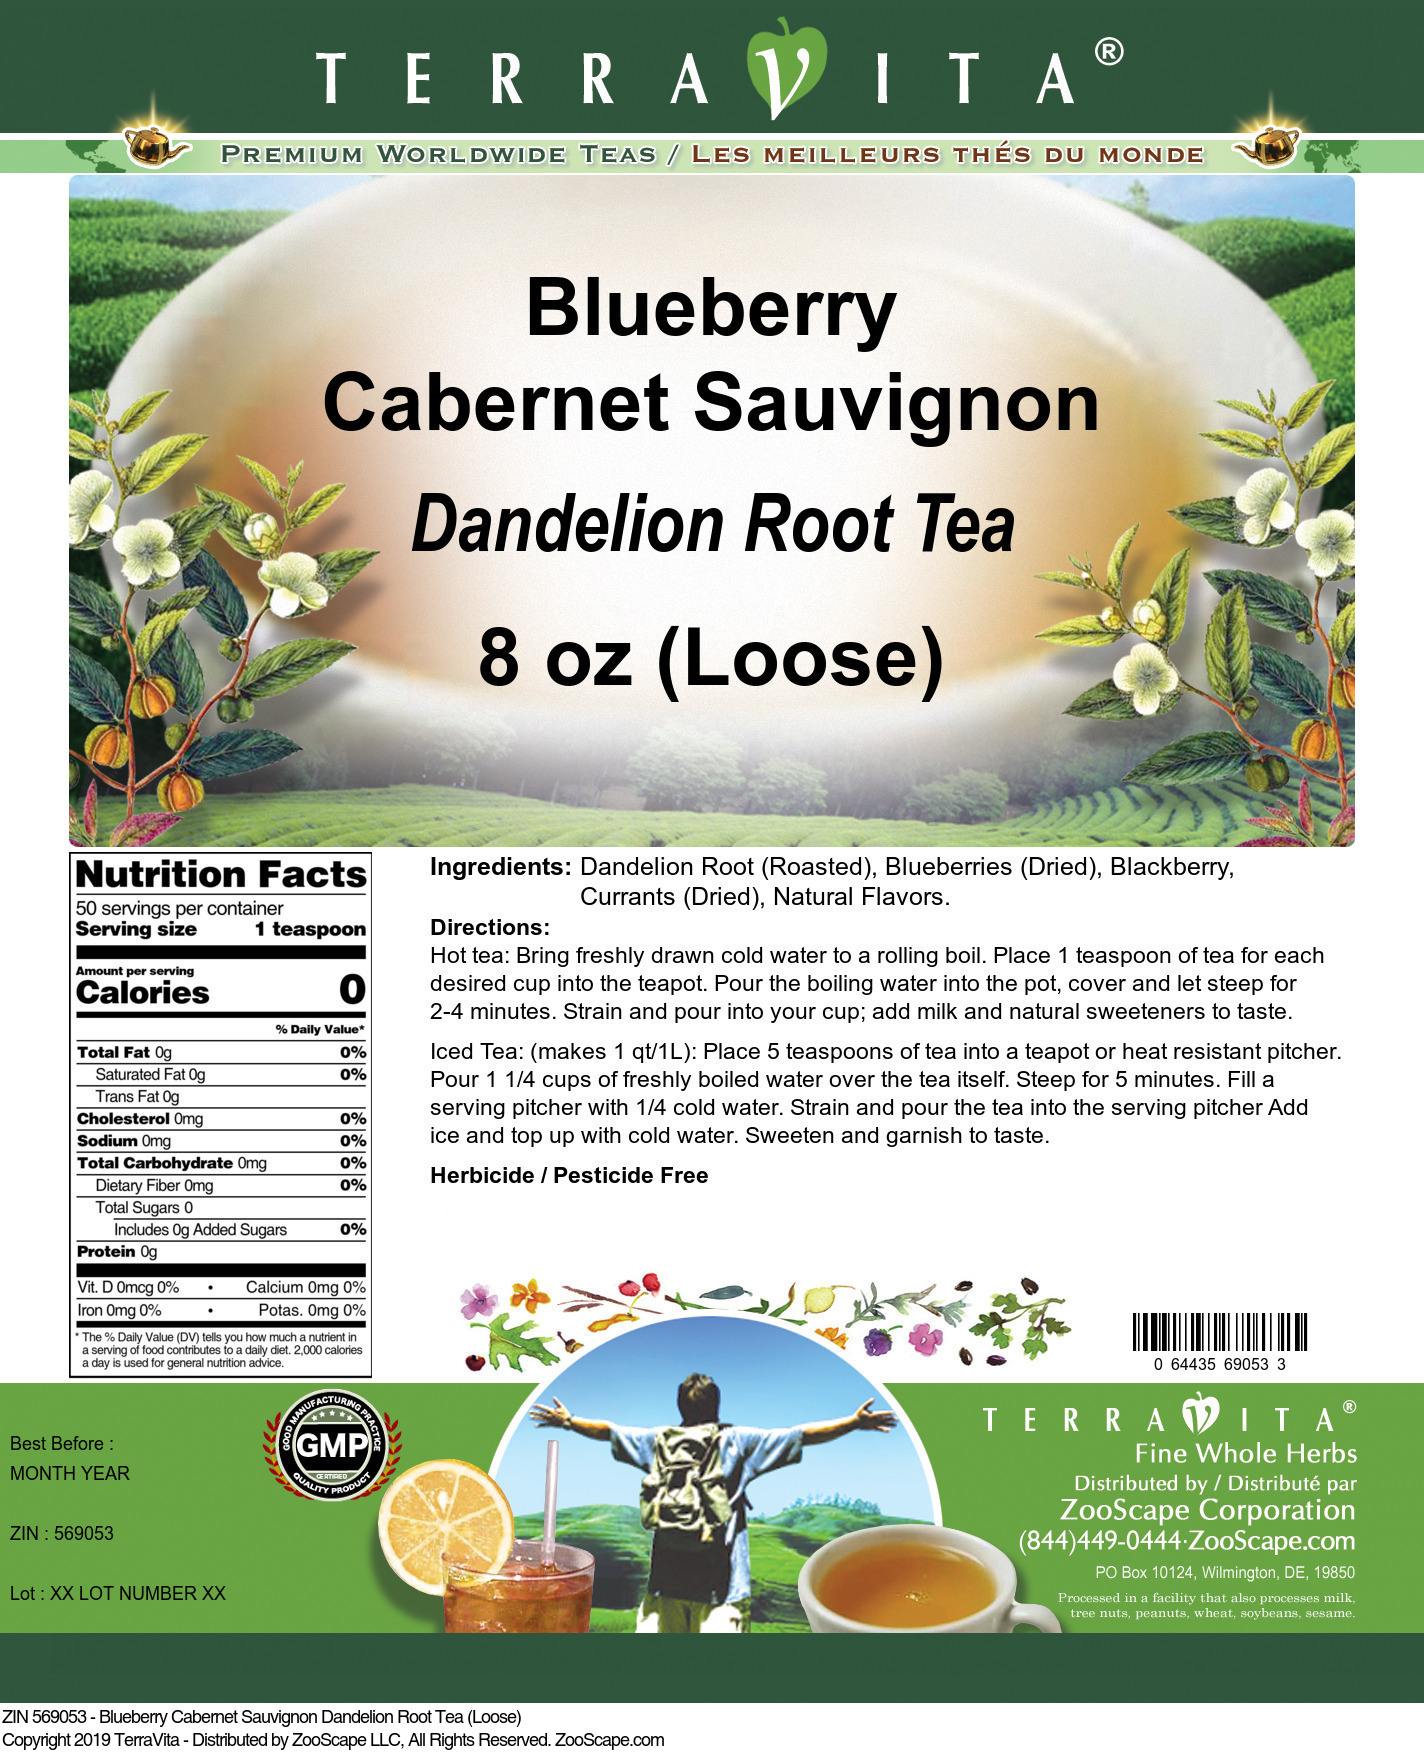 Blueberry Cabernet Sauvignon Dandelion Root Tea (Loose) - Label